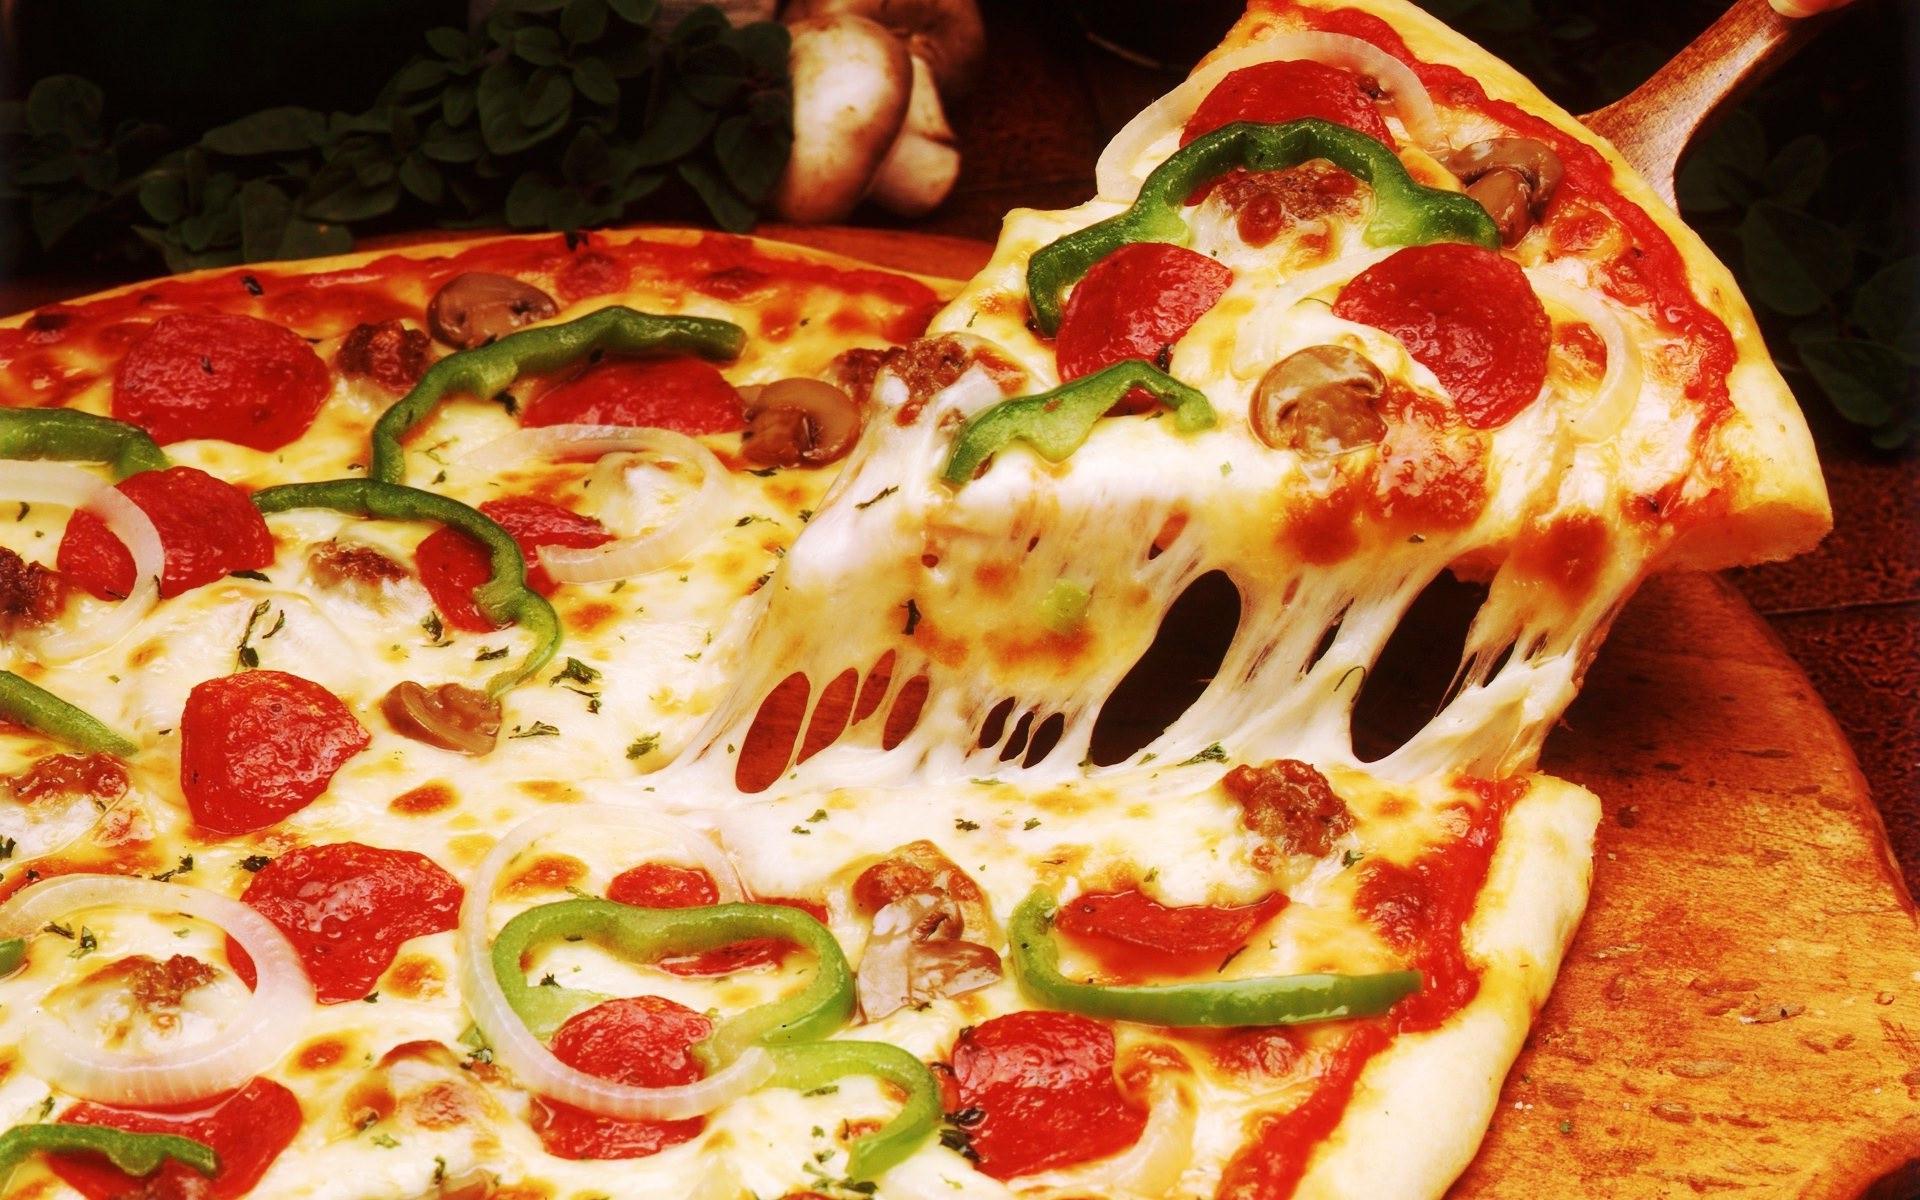 Суд разрешил итальянцу выплачивать алименты пиццей